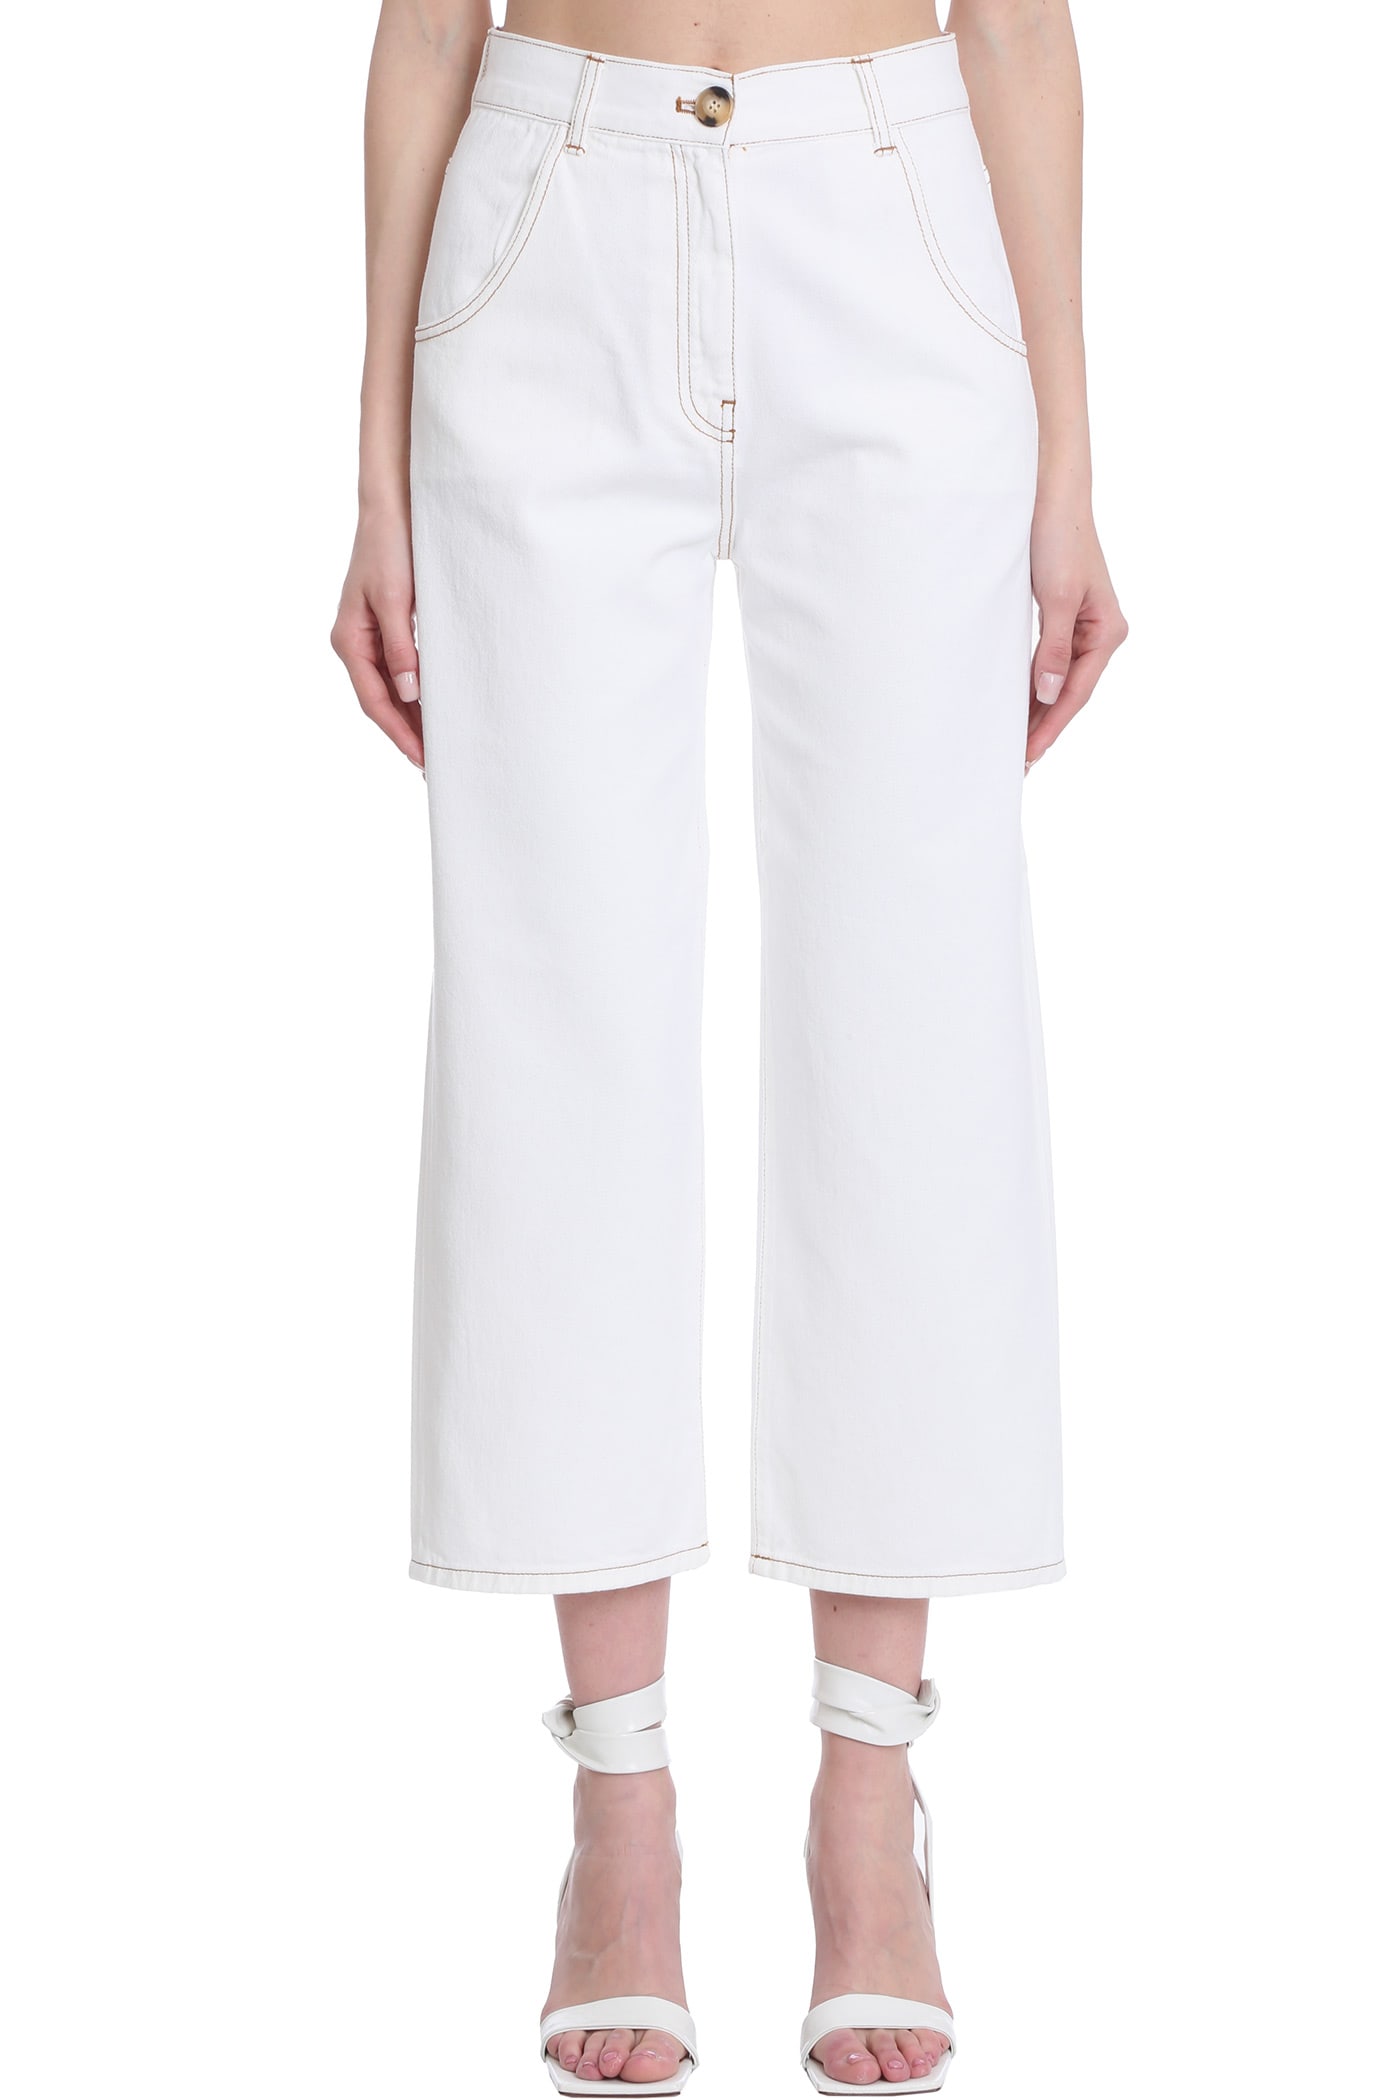 LAutre Chose Jeans In White Denim